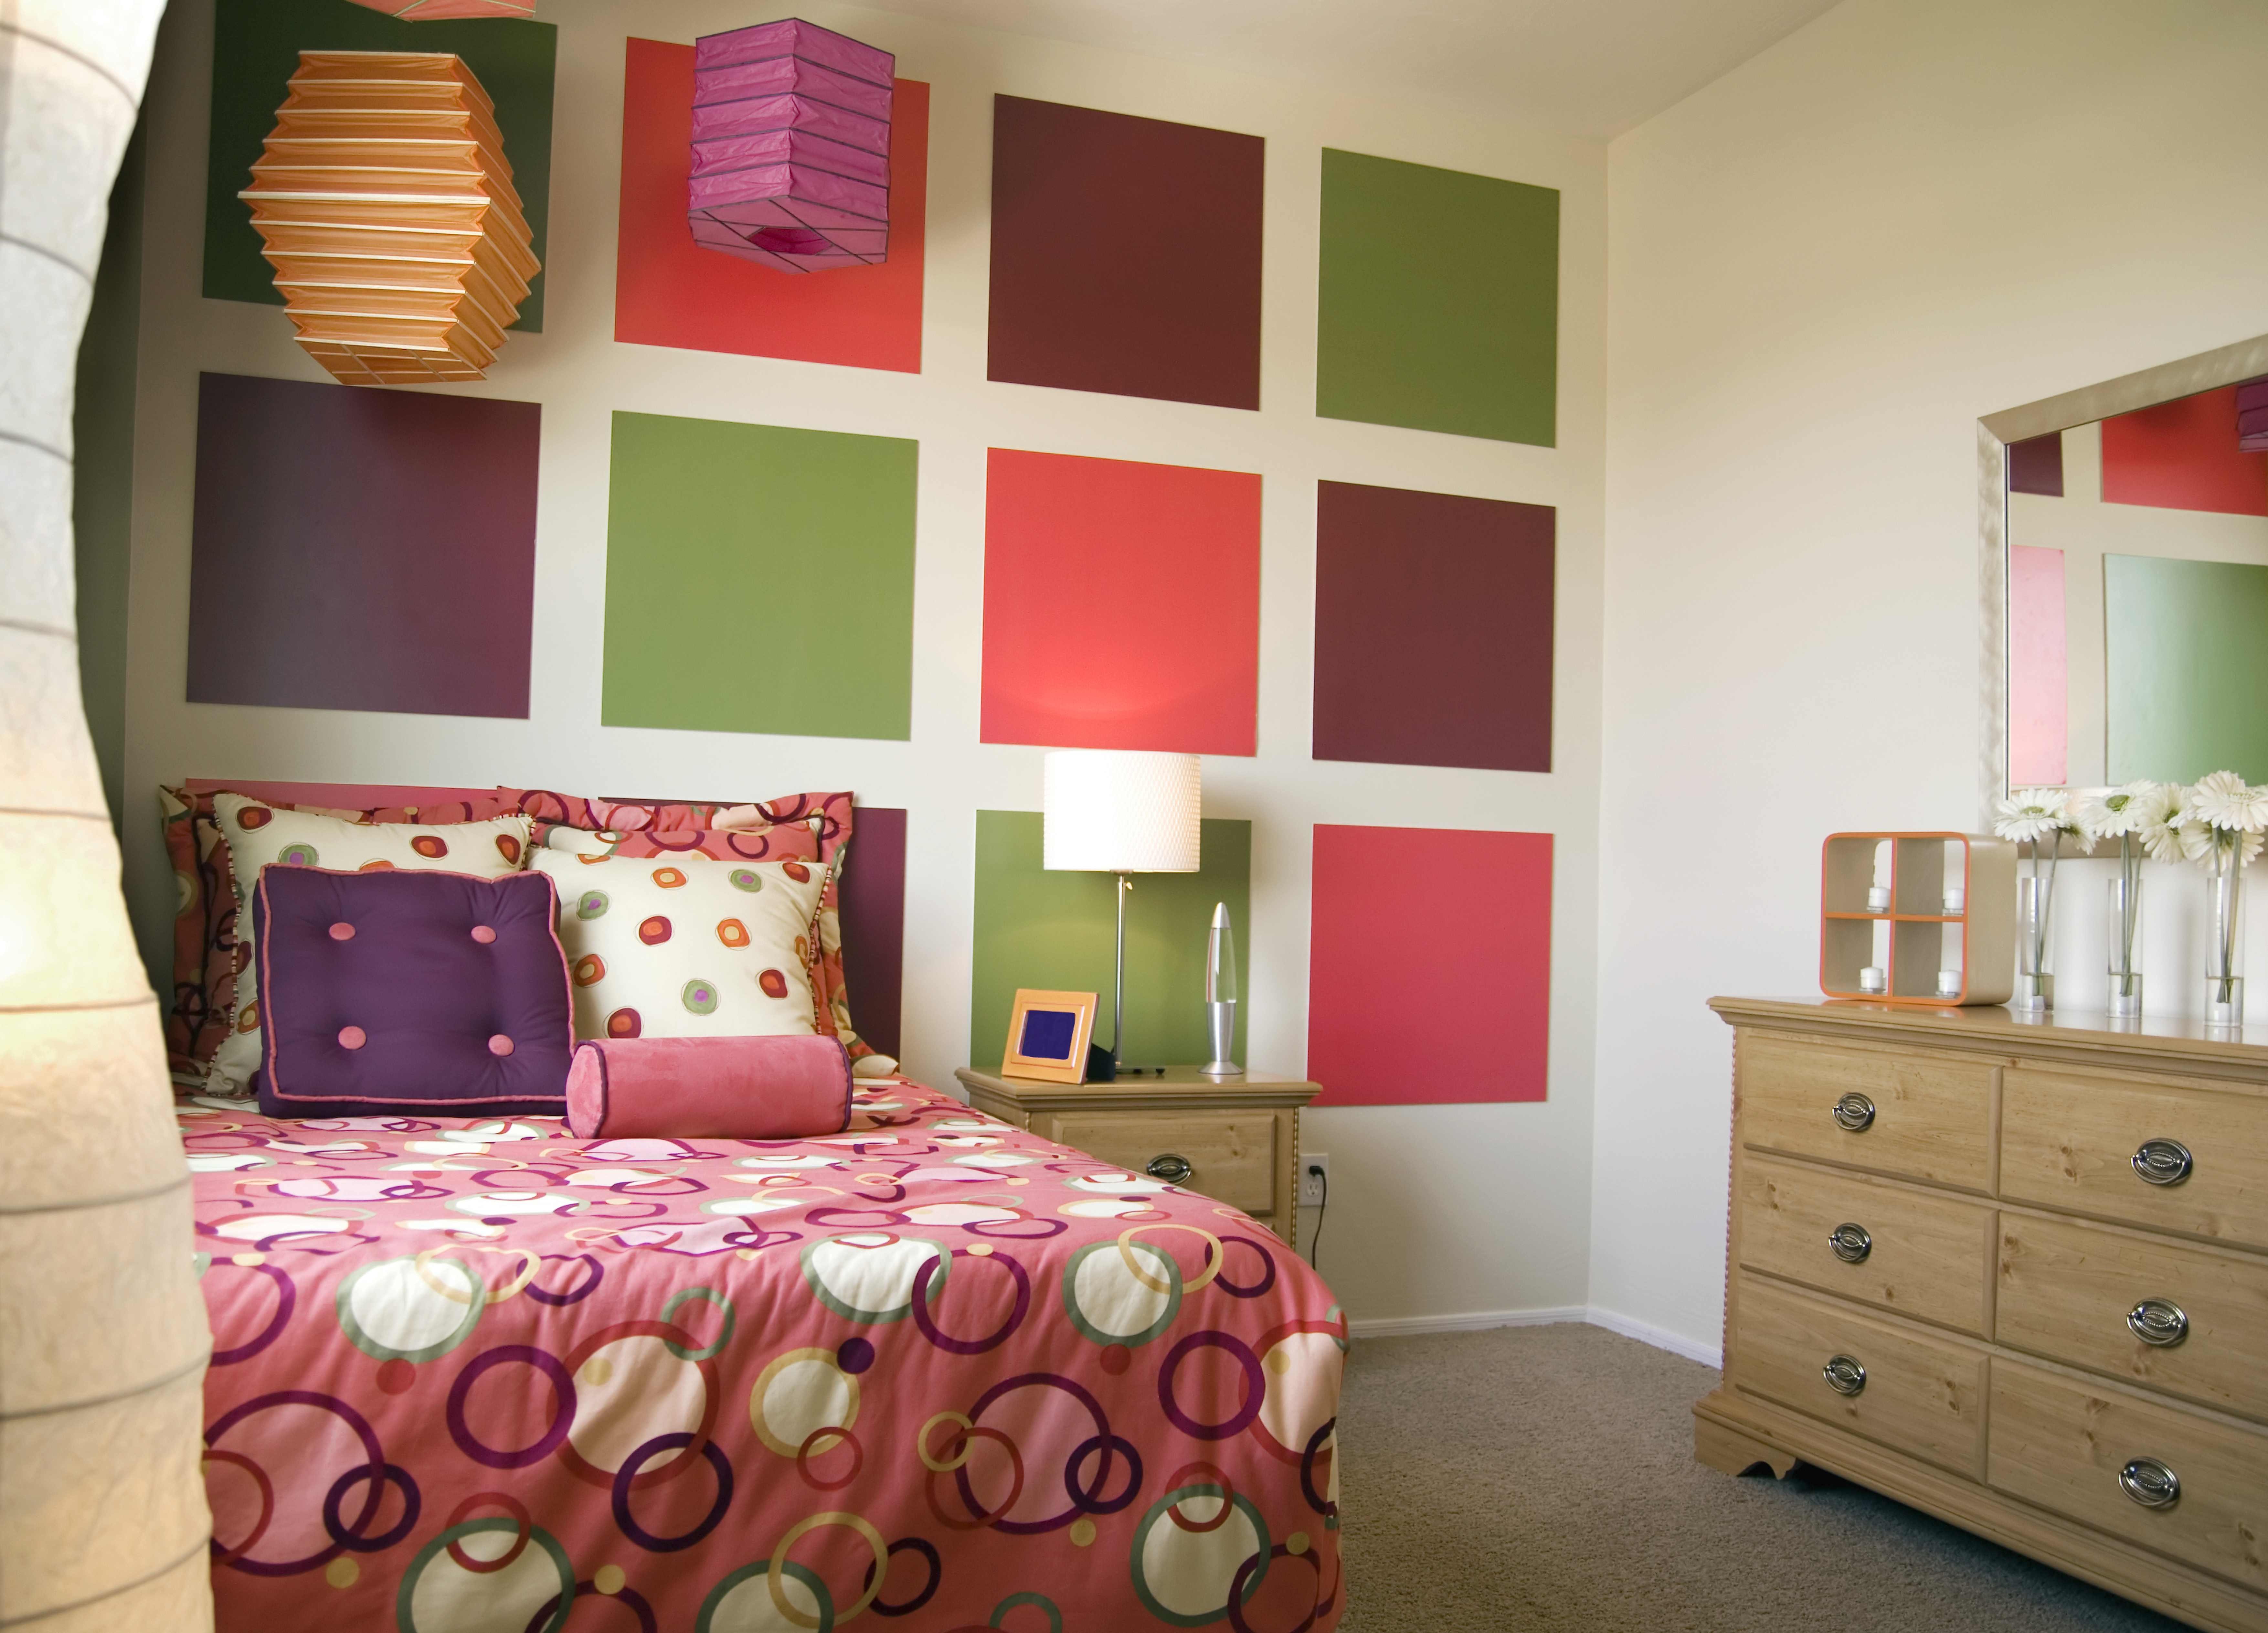 мебель разная по цвету в одной комнате